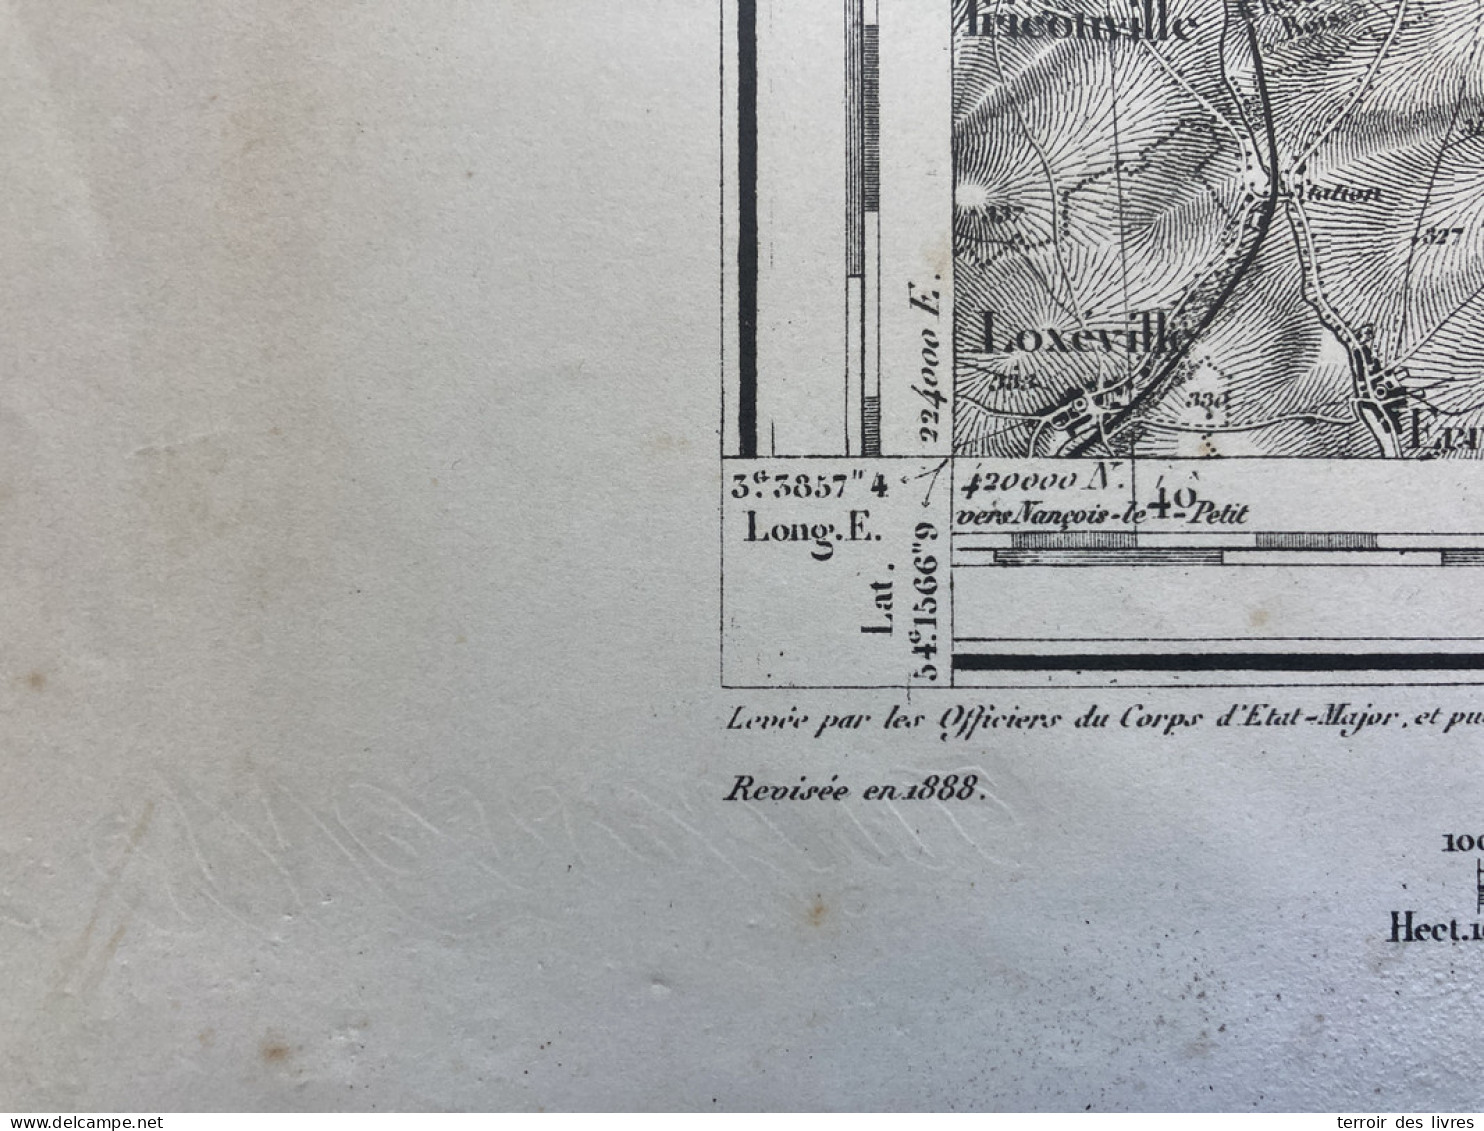 Carte état Major COMMERCY S.O. 1835 1888 33x50cm MARBOTTE APREMONT LA FORET VARNEVILLE LIOUVILLE LOUPMONT MARBOTTE ST-JU - Geographical Maps